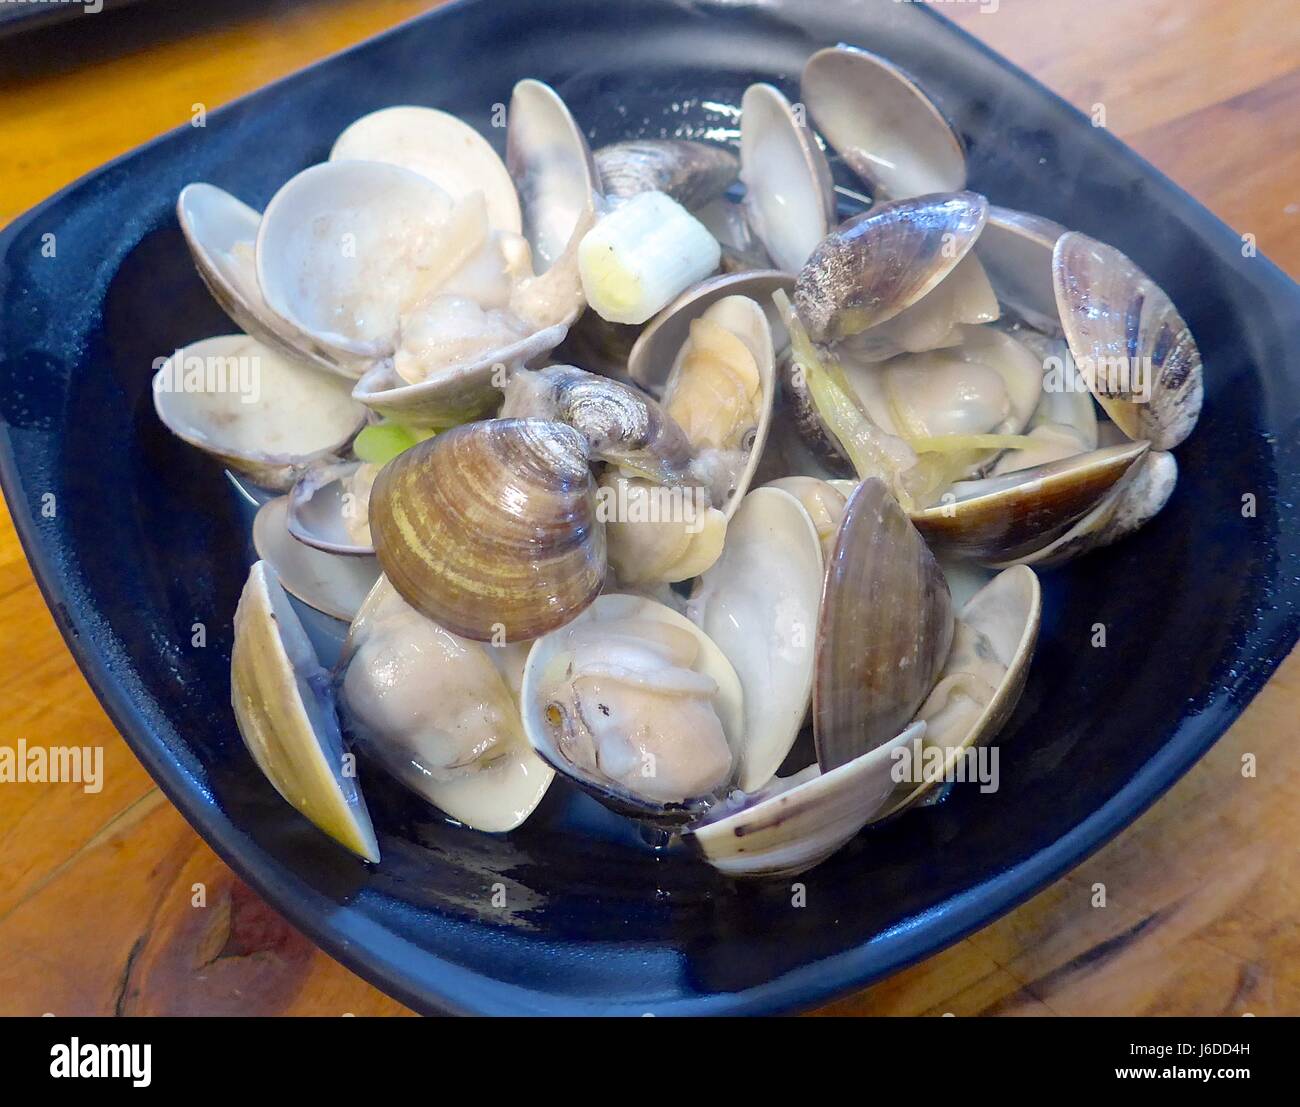 Stir fried clams closeup Stock Photo